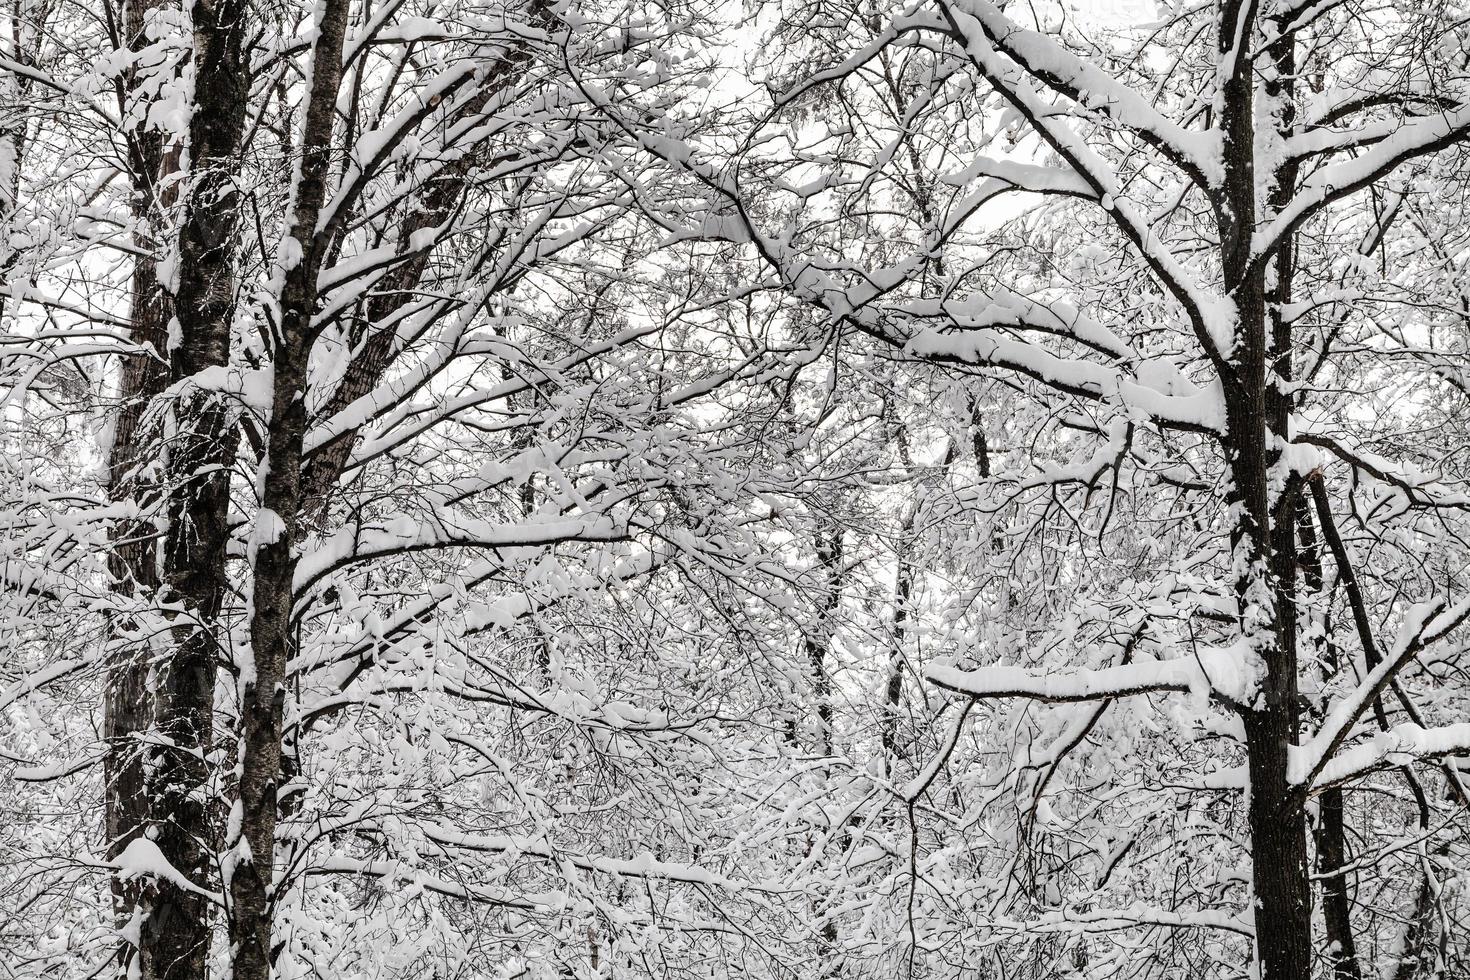 ramitas entrelazadas cubiertas de nieve en el bosque de invierno foto